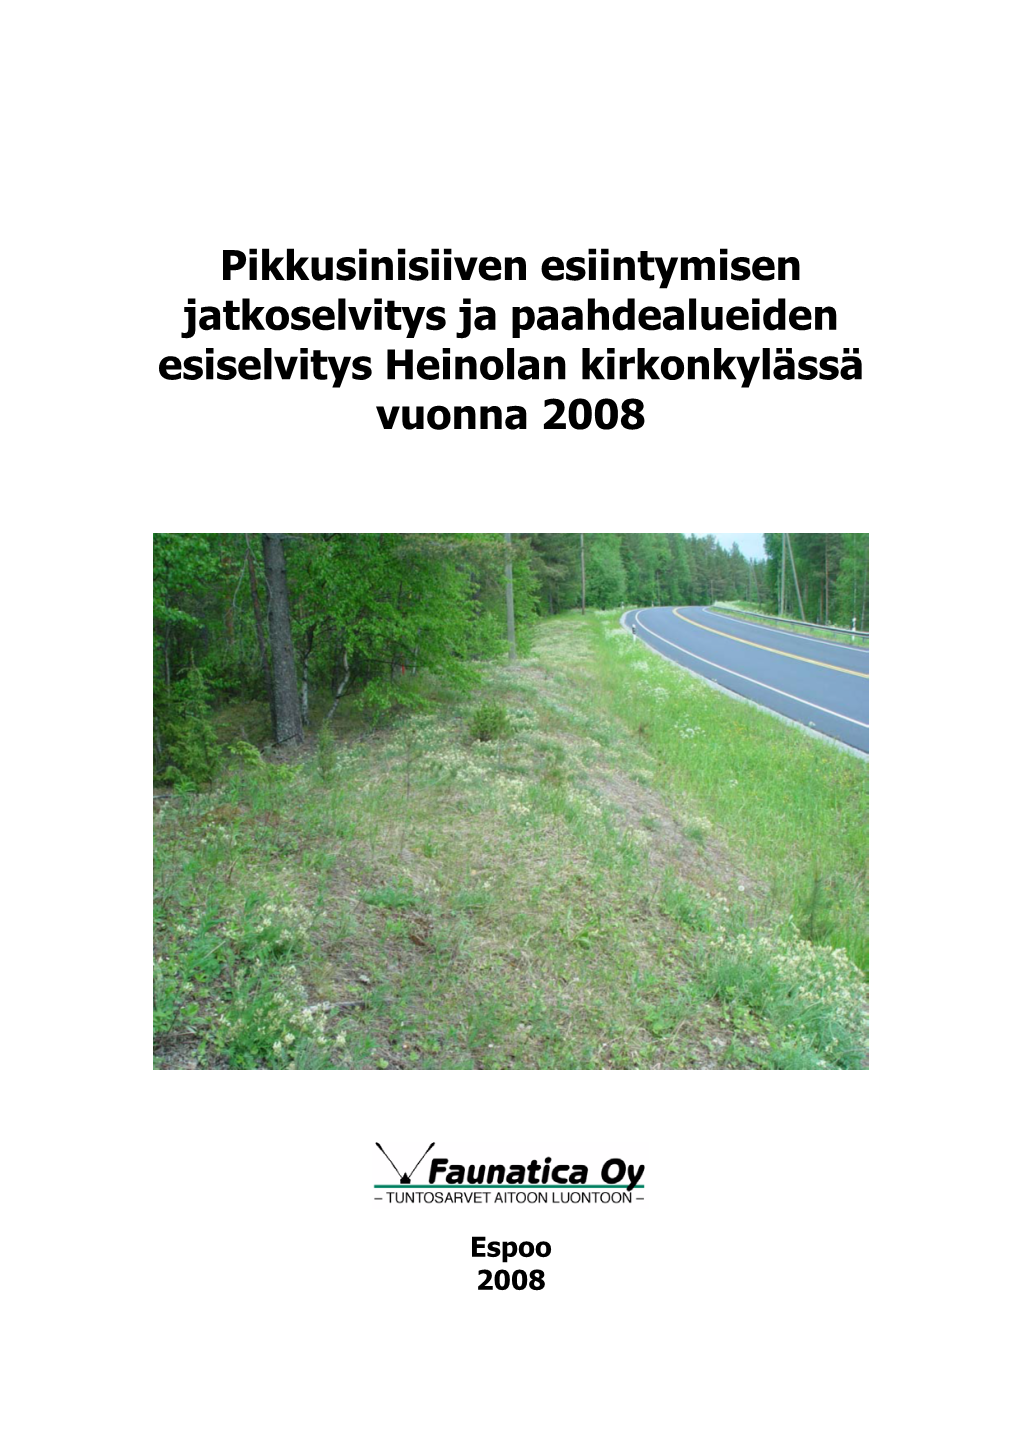 Pikkusinisiiven Esiintymisen Jatkoselvitys Ja Paahdealueiden Esiselvitys Heinolan Kirkonkylässä Vuonna 2008